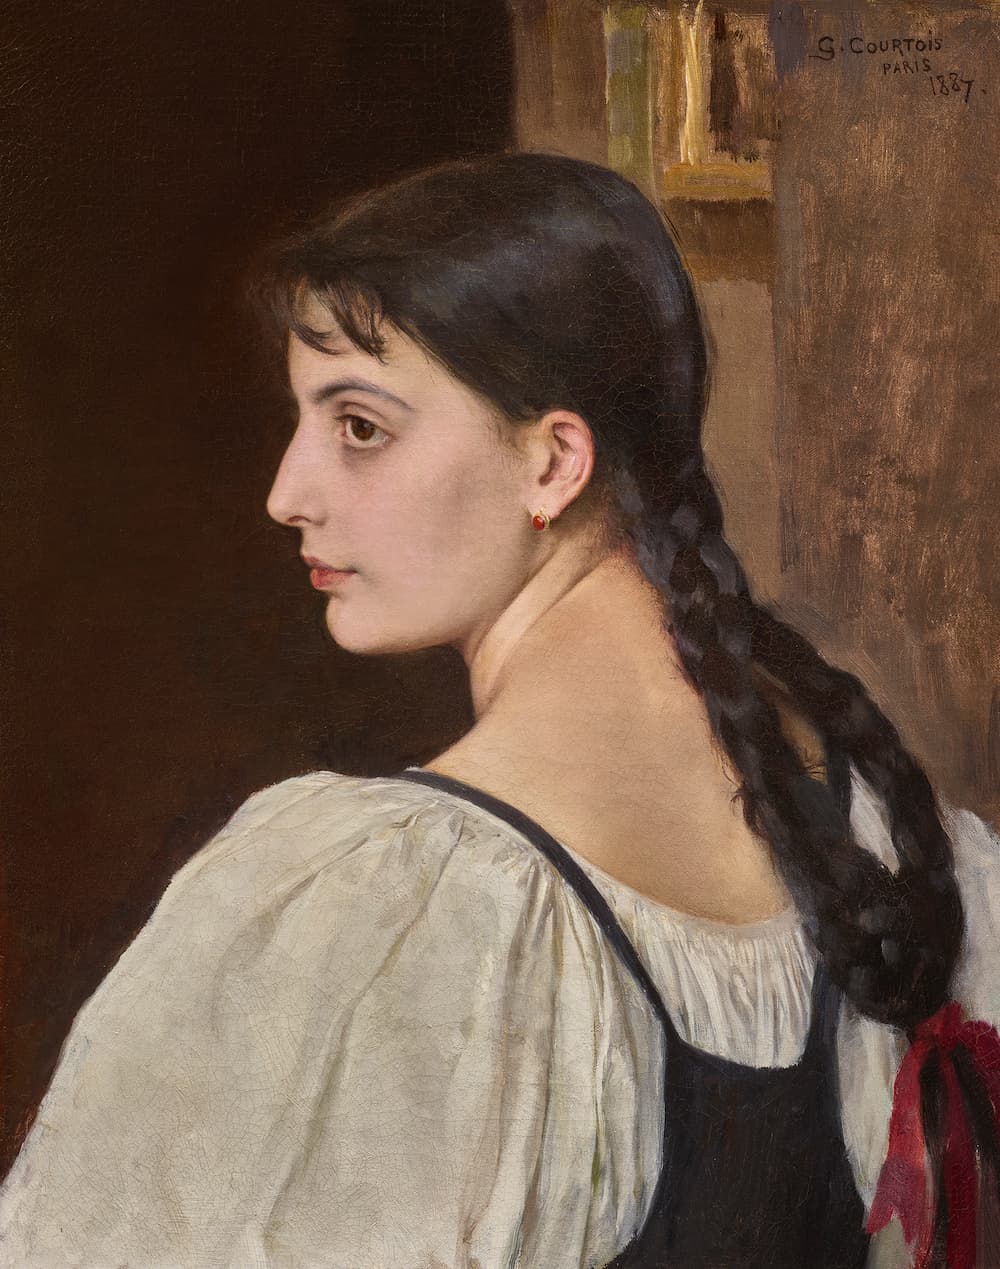 Gustave Courtois, Jeune femme de profil, Oil on canvas, 1887